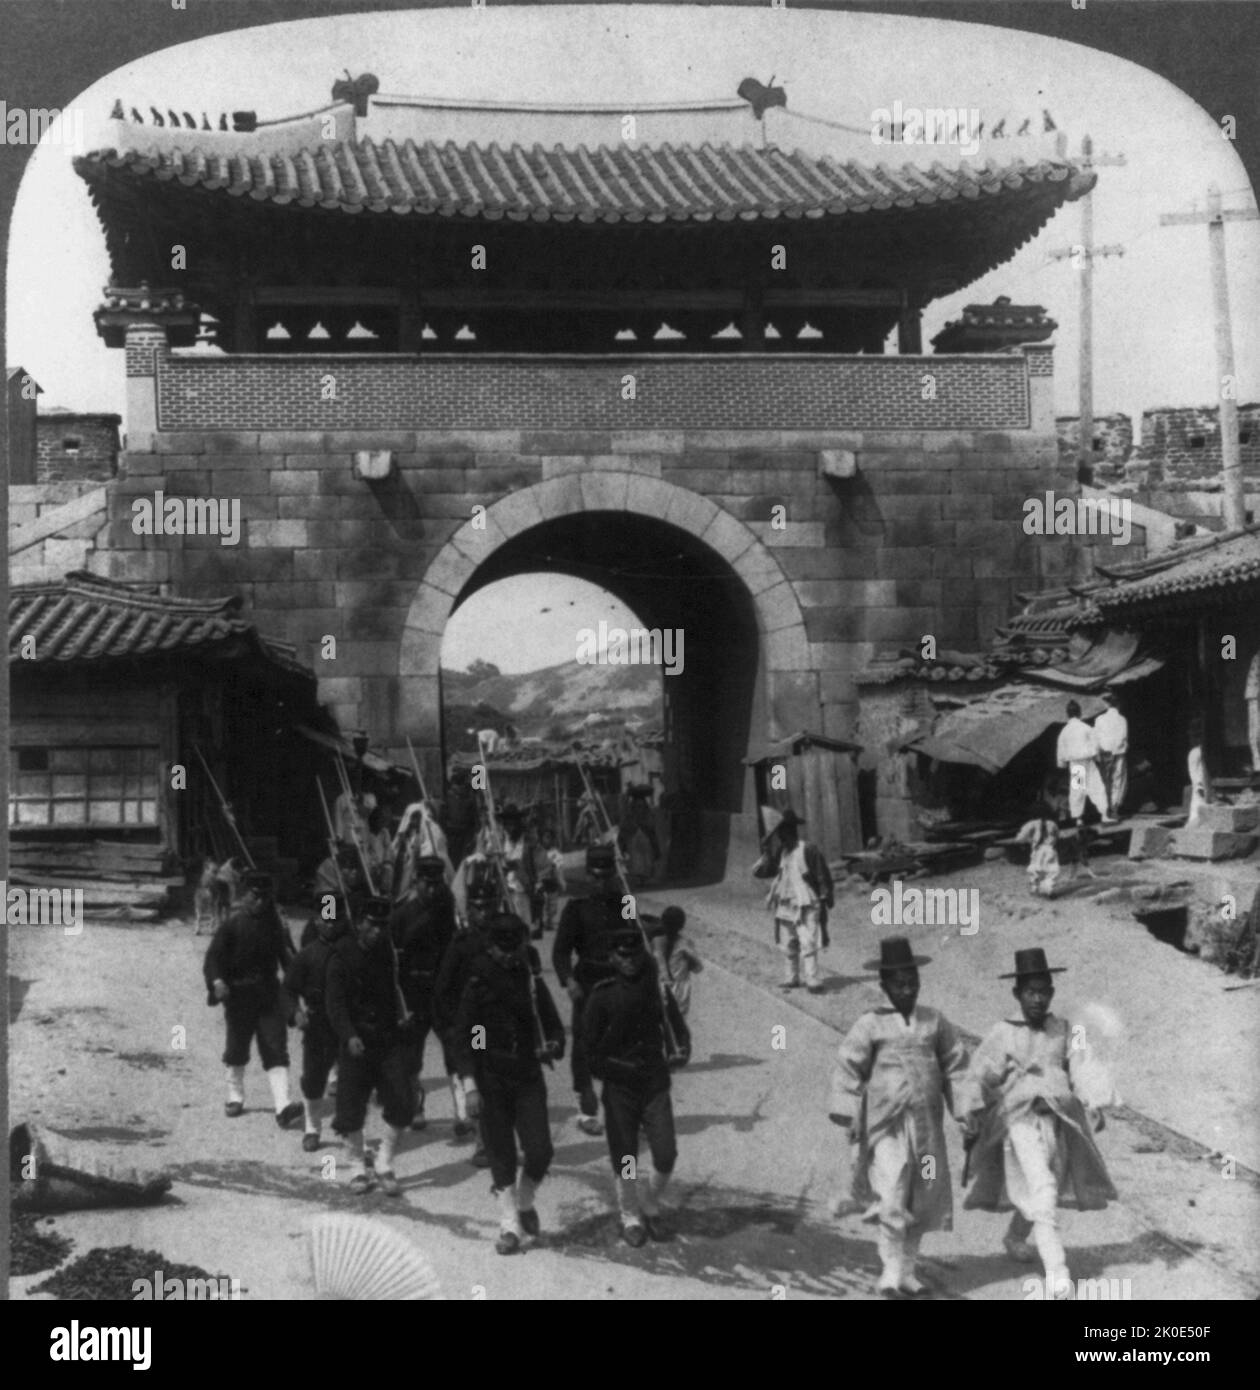 Vista de la Puerta de Donuimun, Seúl, Corea, mostrando los rieles eléctricos del tranvía y los postes del telégrafo. Dinastía Joseon Corea, 1900. Foto de stock